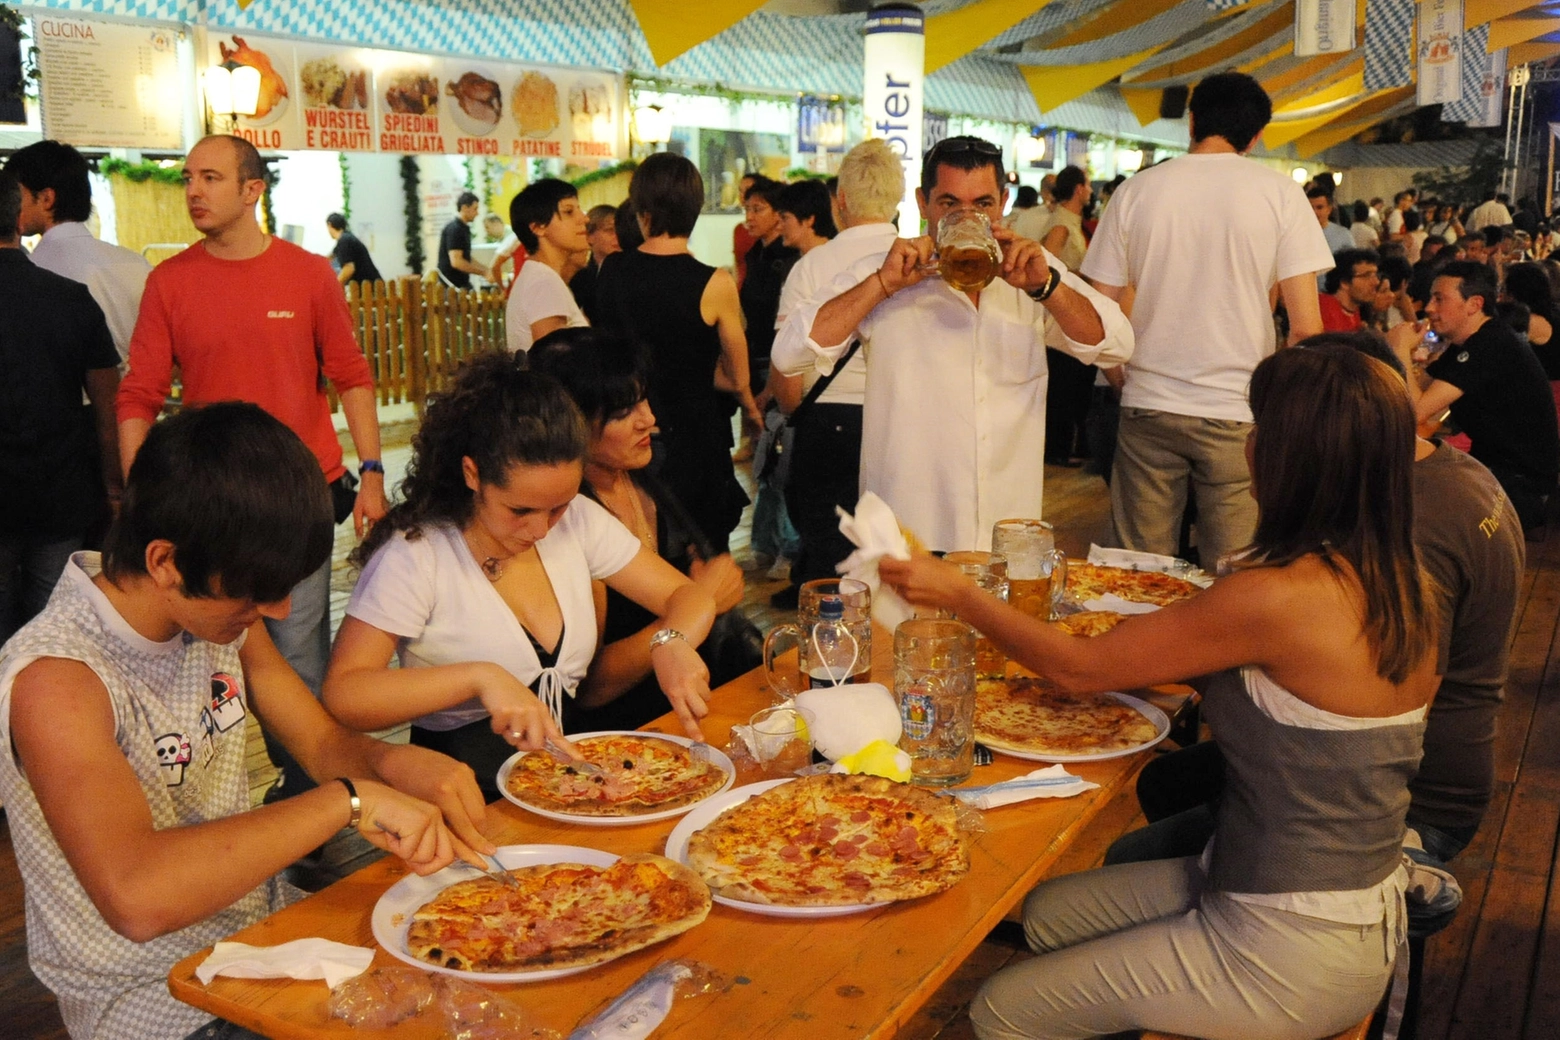 In Italia per mangiare fuori ad agosto verranno spesi 10 miliardi